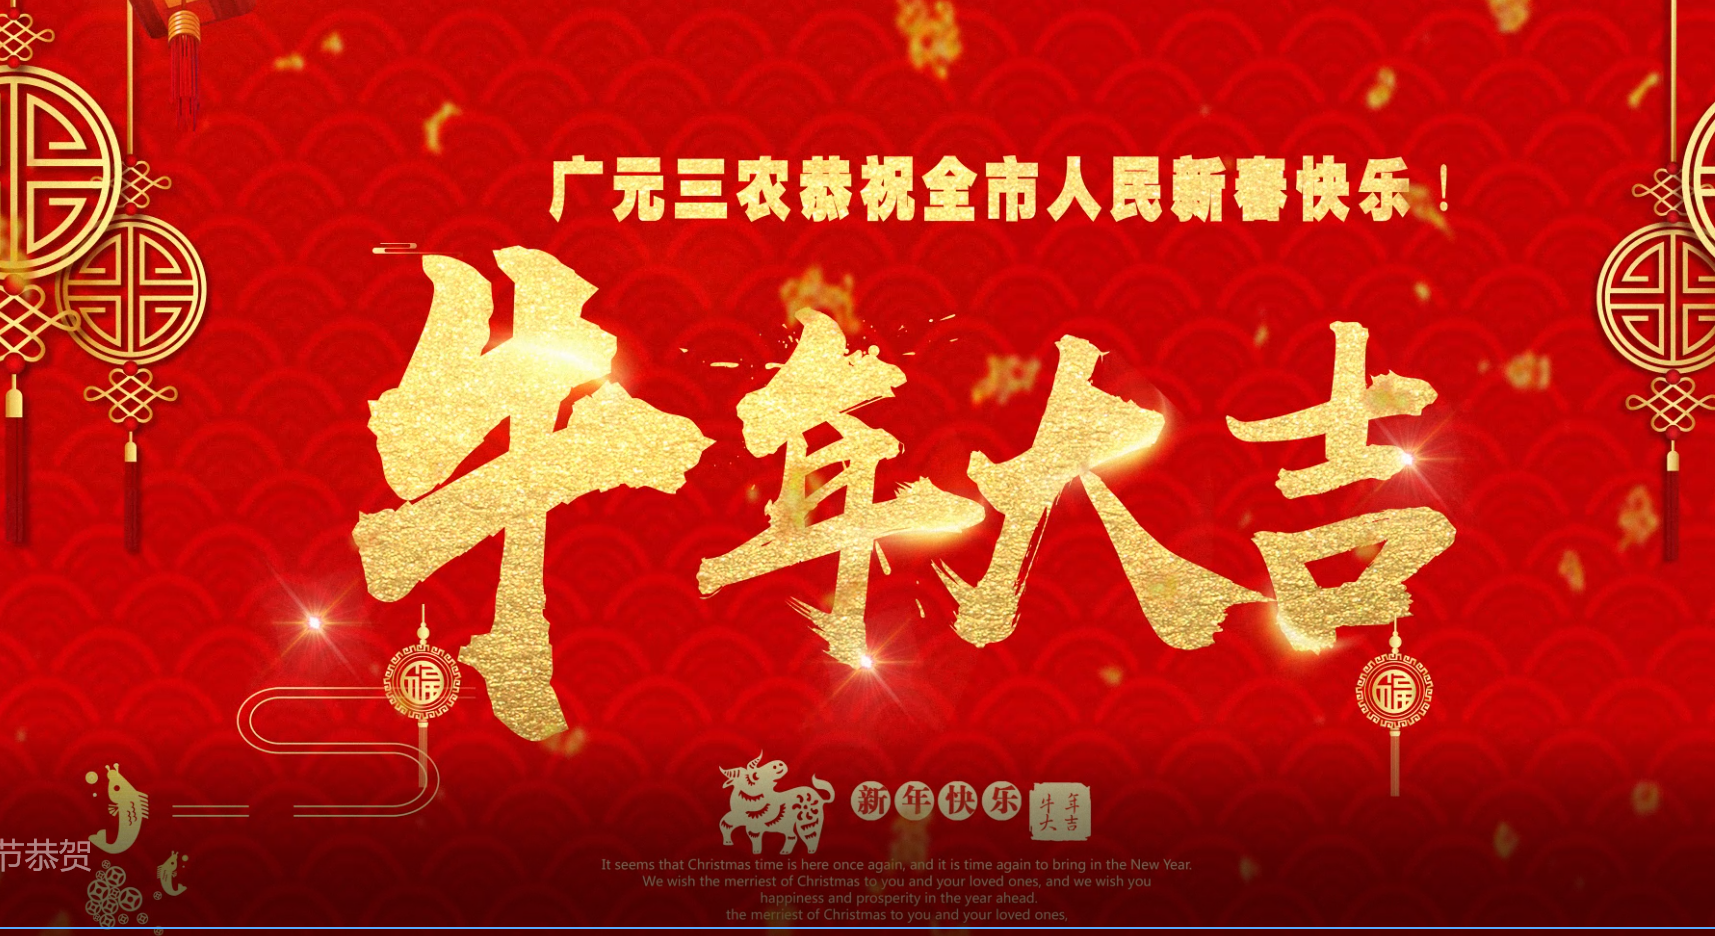 广元三农恭祝全市人民新春快乐！